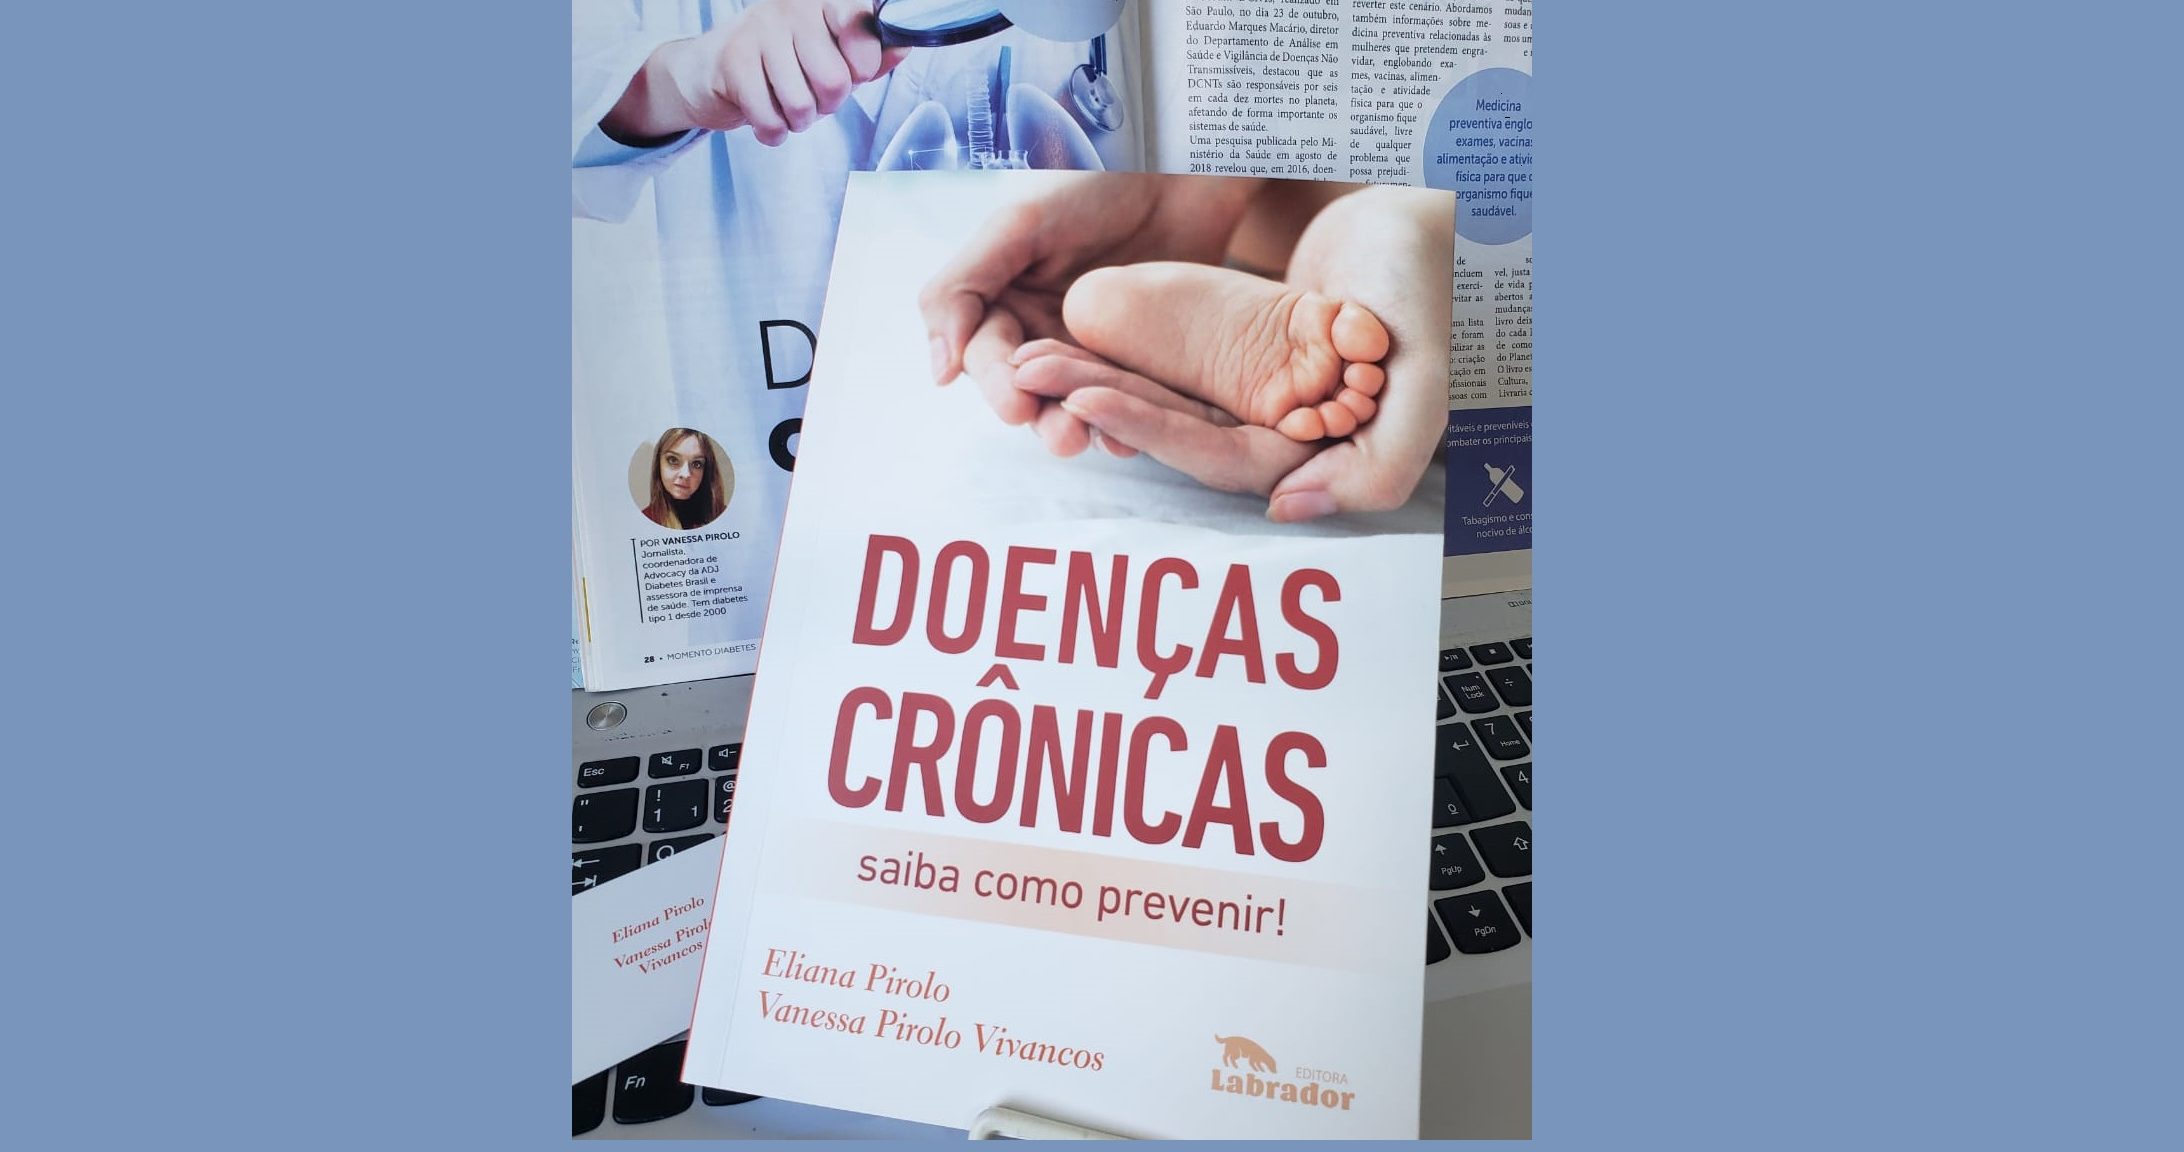 Medicina preventiva e o controle de doenças crônicas não transmissíveis